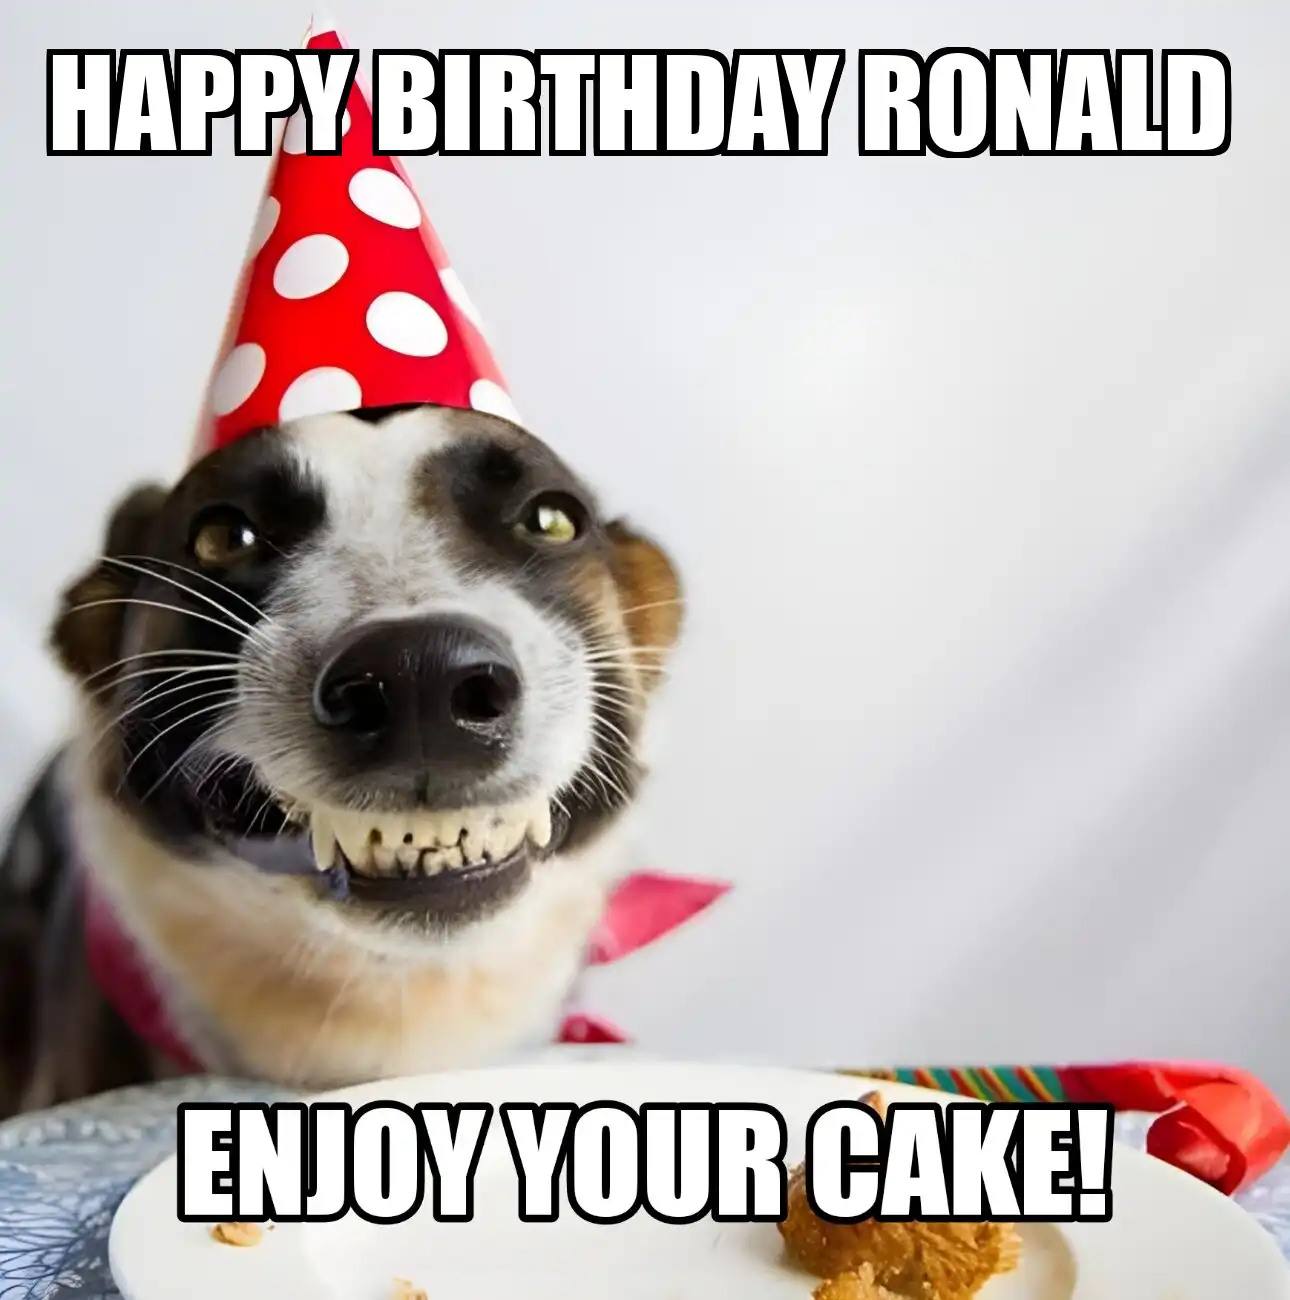 Happy Birthday Ronald Enjoy Your Cake Dog Meme